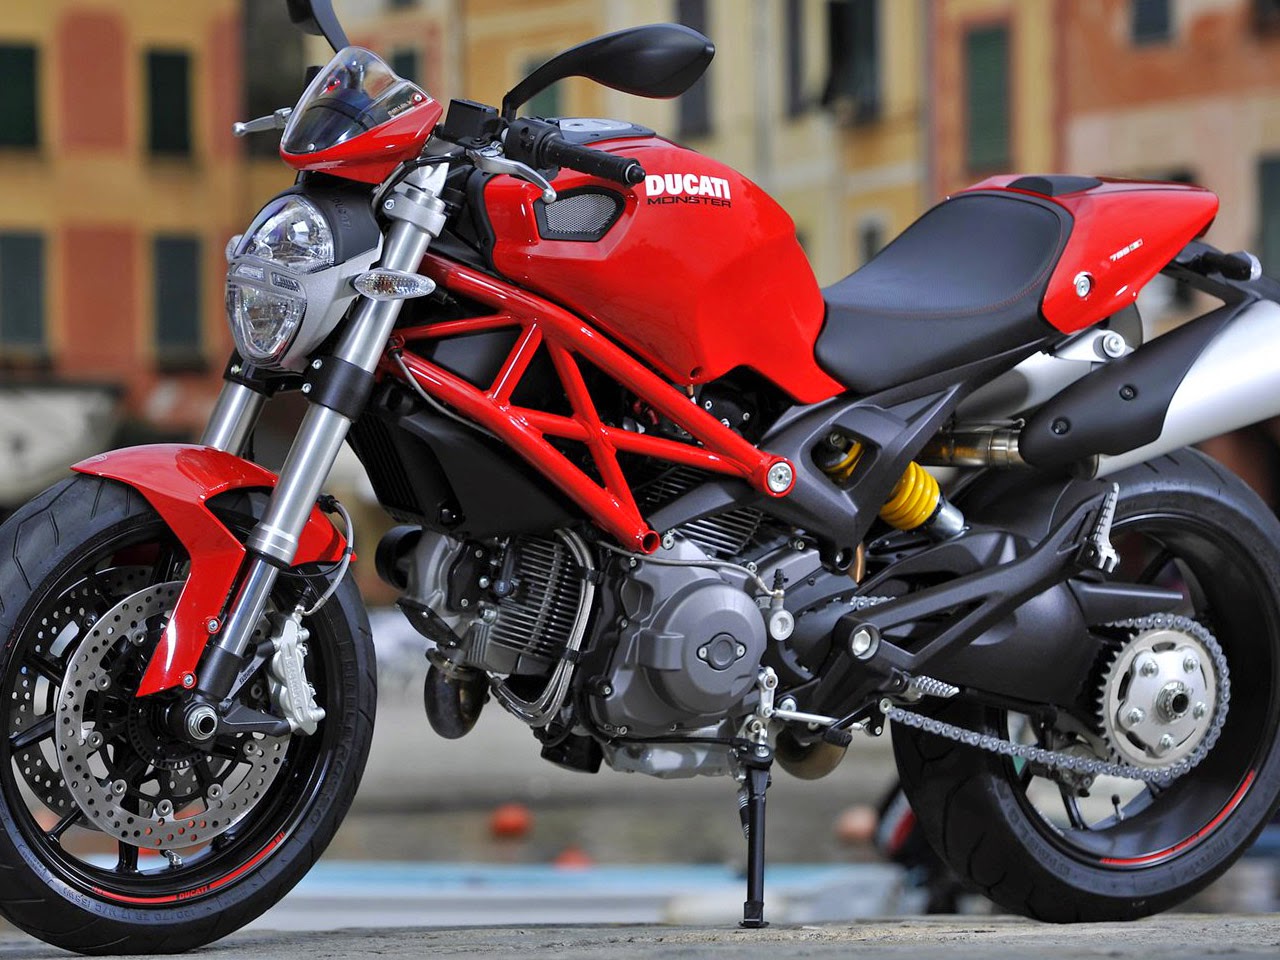 Koleksi Modifikasi Motor Ninja Ducati Terbaru Dan Terlengkap